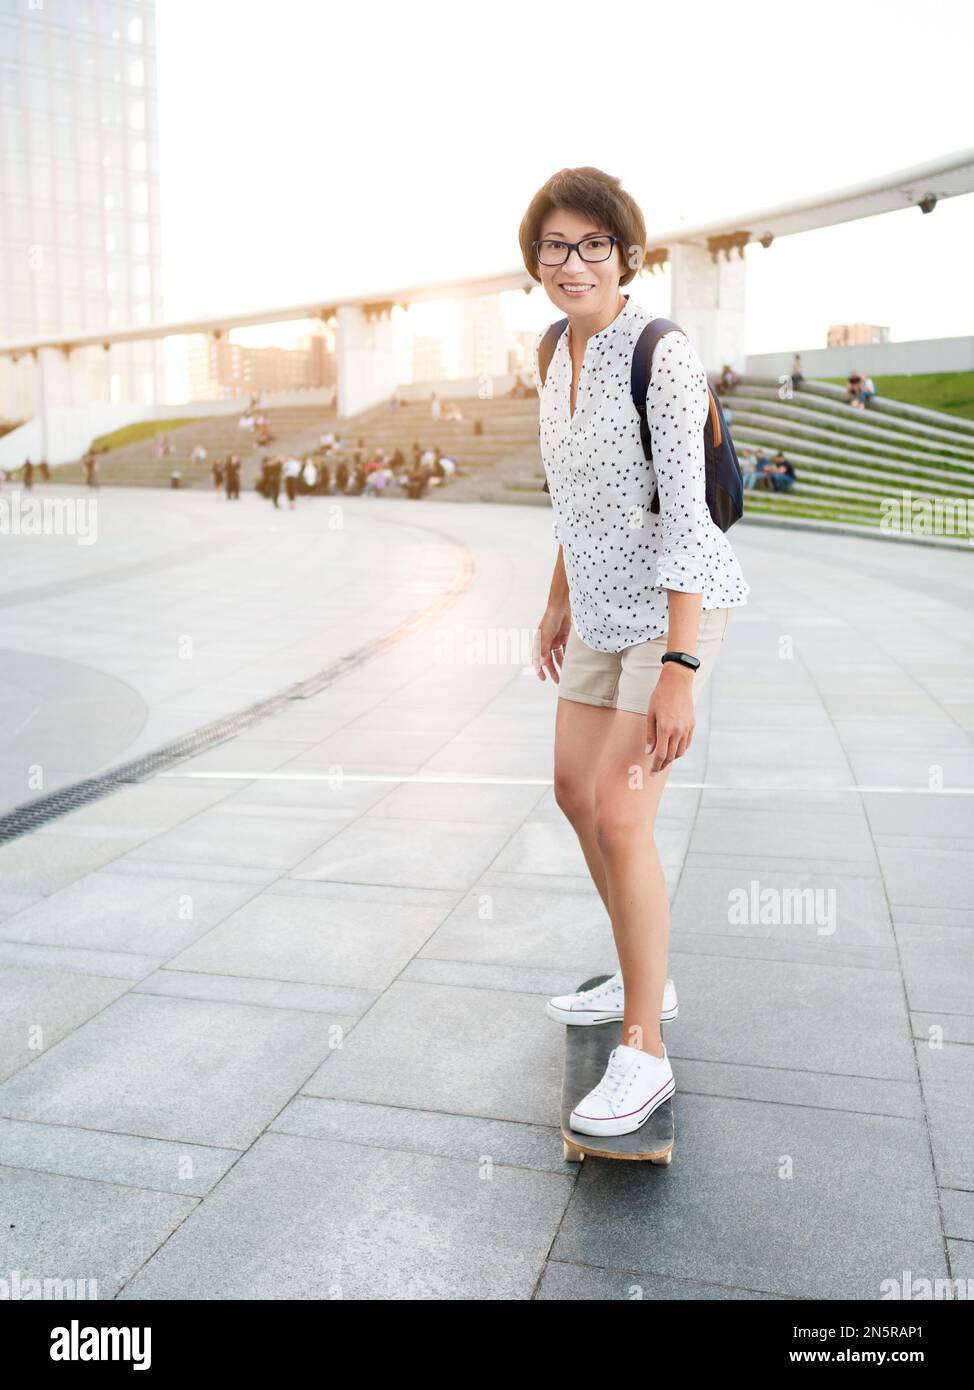 Frau fährt Skateboard auf dem Stadtplatz bei Sonnenuntergang. Sommerliche Stimmung. Neue Dinge im Erwachsenenalter lernen. Millennial lernt Skaten. Gesunder Lebensstil. Stockfoto